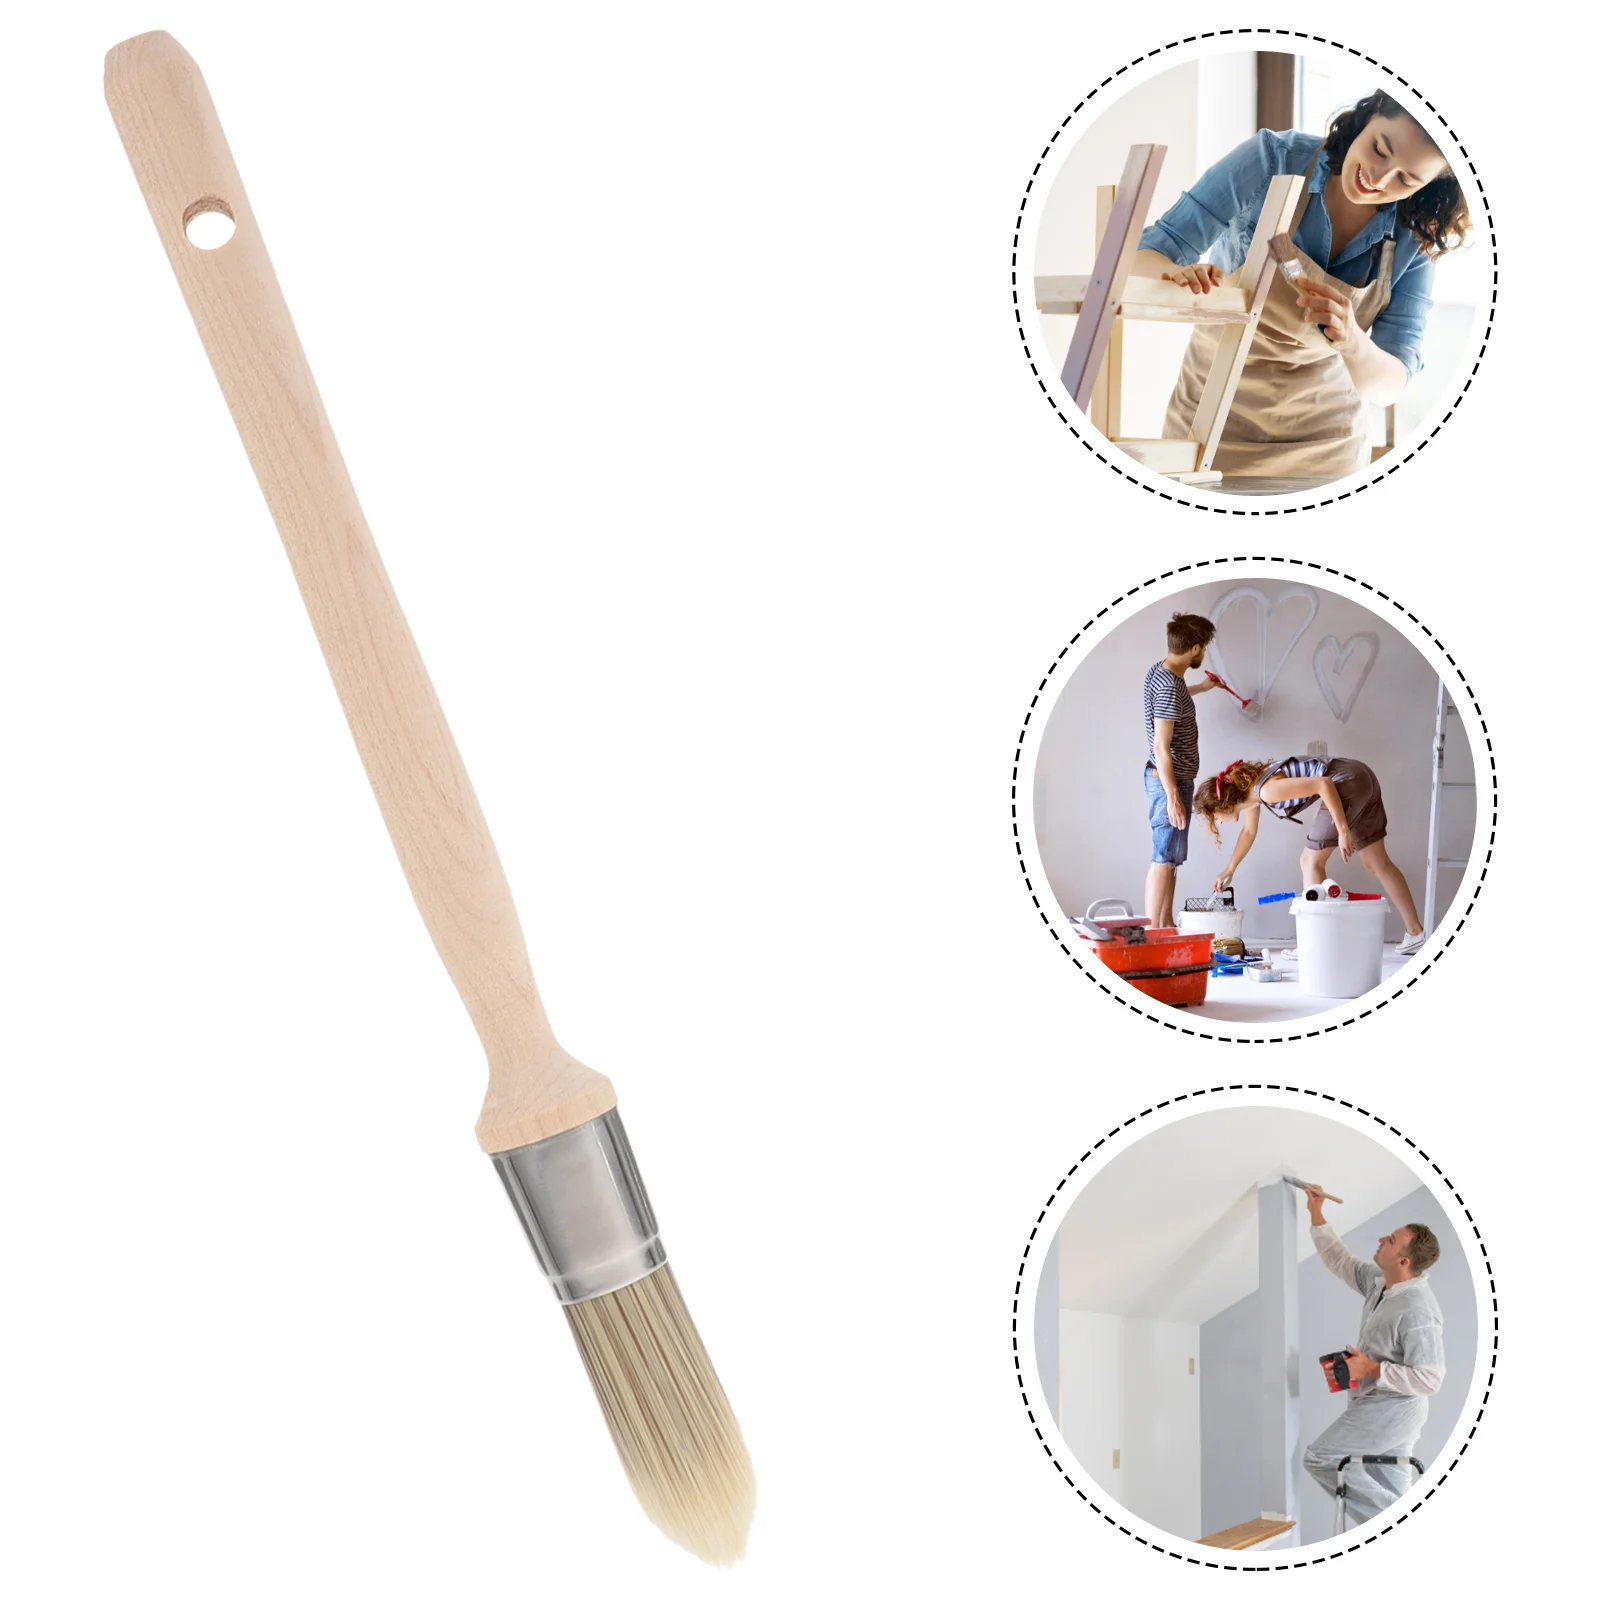 

Ручка для рисования, круглое устройство для подкрашивания стен, одноразовое средство для подкрашивания пыли, углов, лестниц